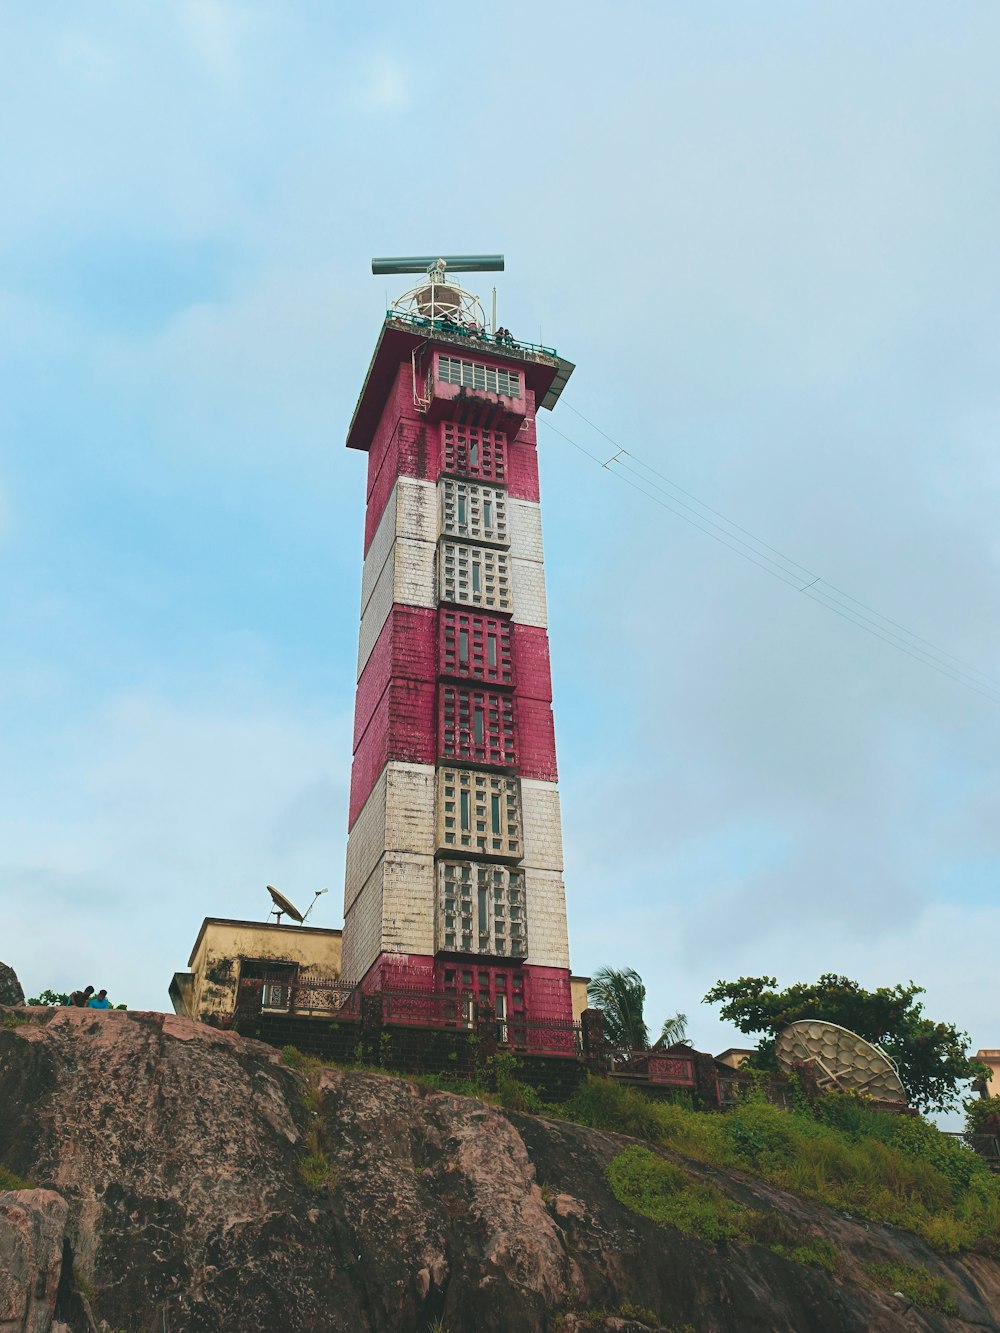 a lighthouse on a rocky hill